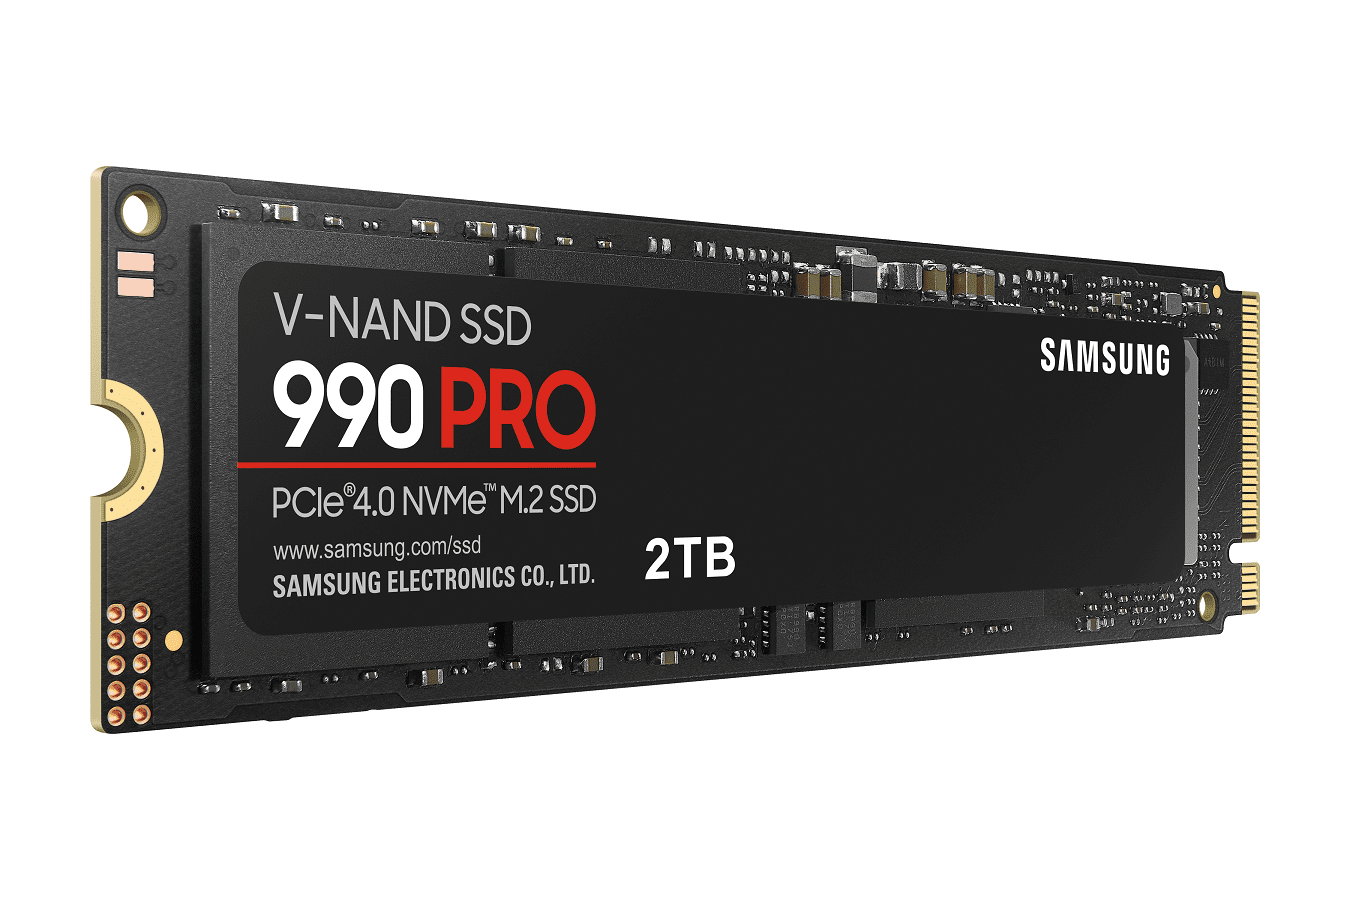 Samsung Electronics præsenterer ny 990 PRO SSD